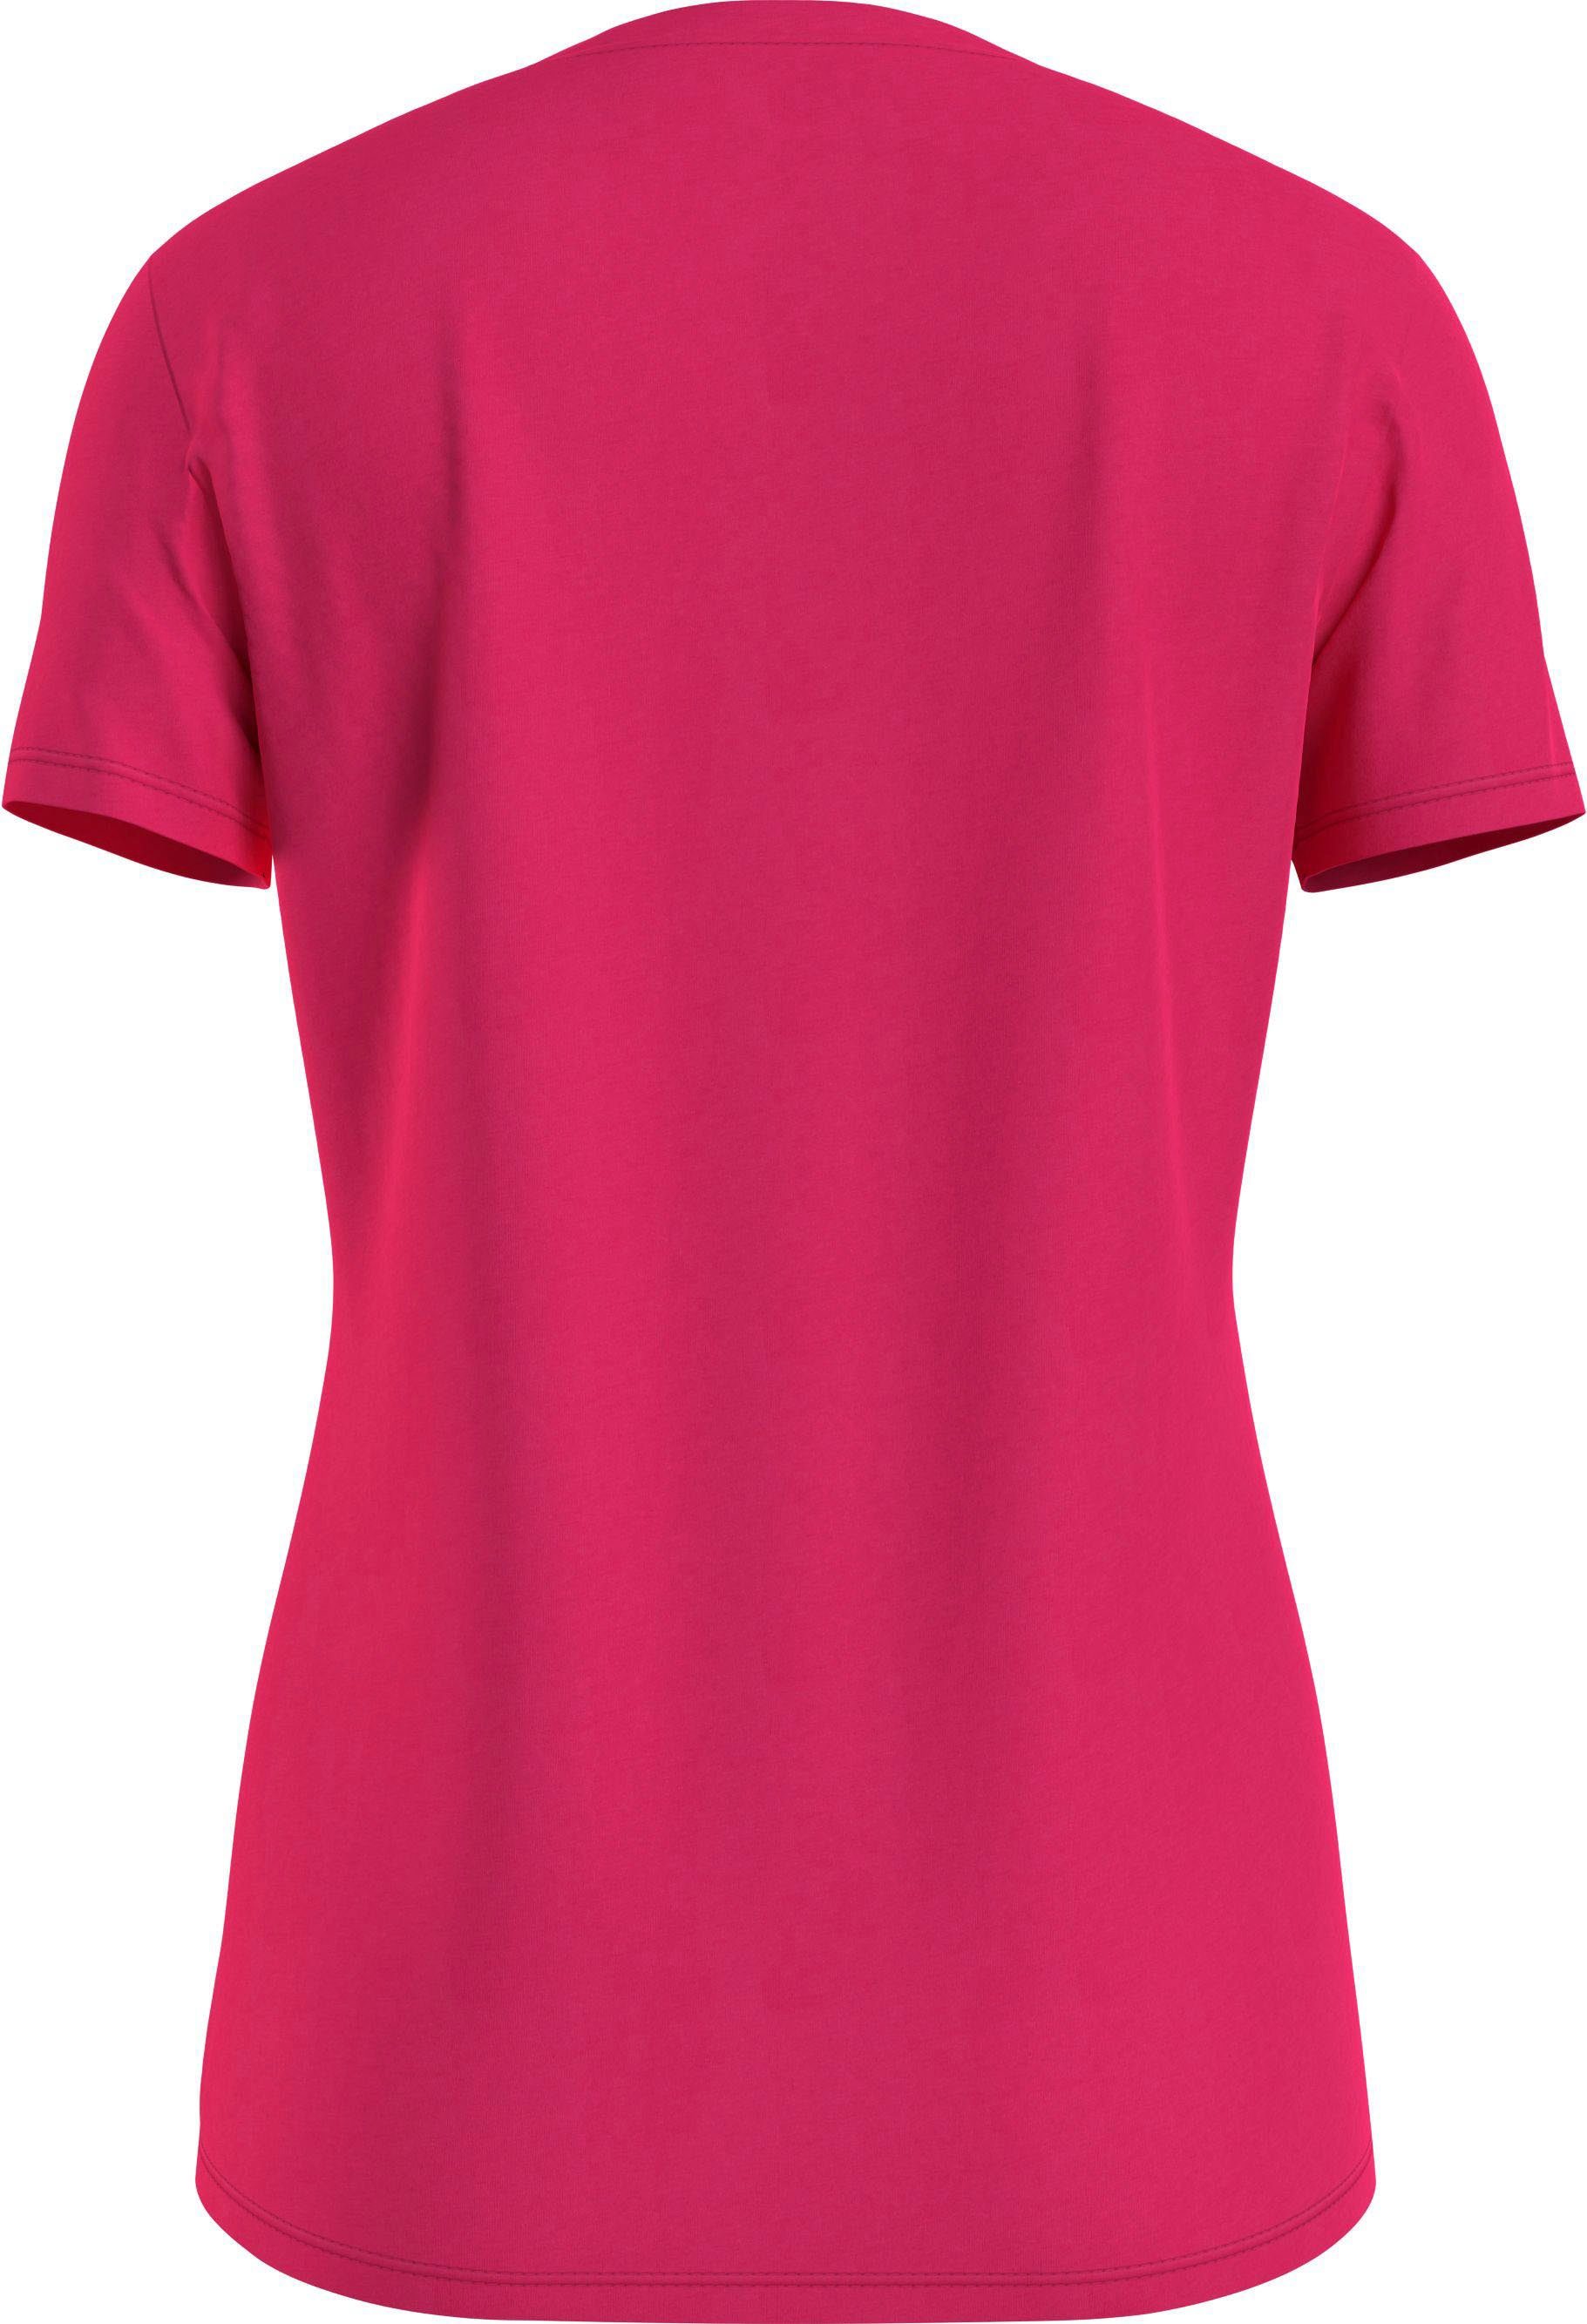 Tommy Tommy Hilfiger NEW mit TEE T-Shirt CREW Pink-Splendor NECK Markenlabel Hilfiger